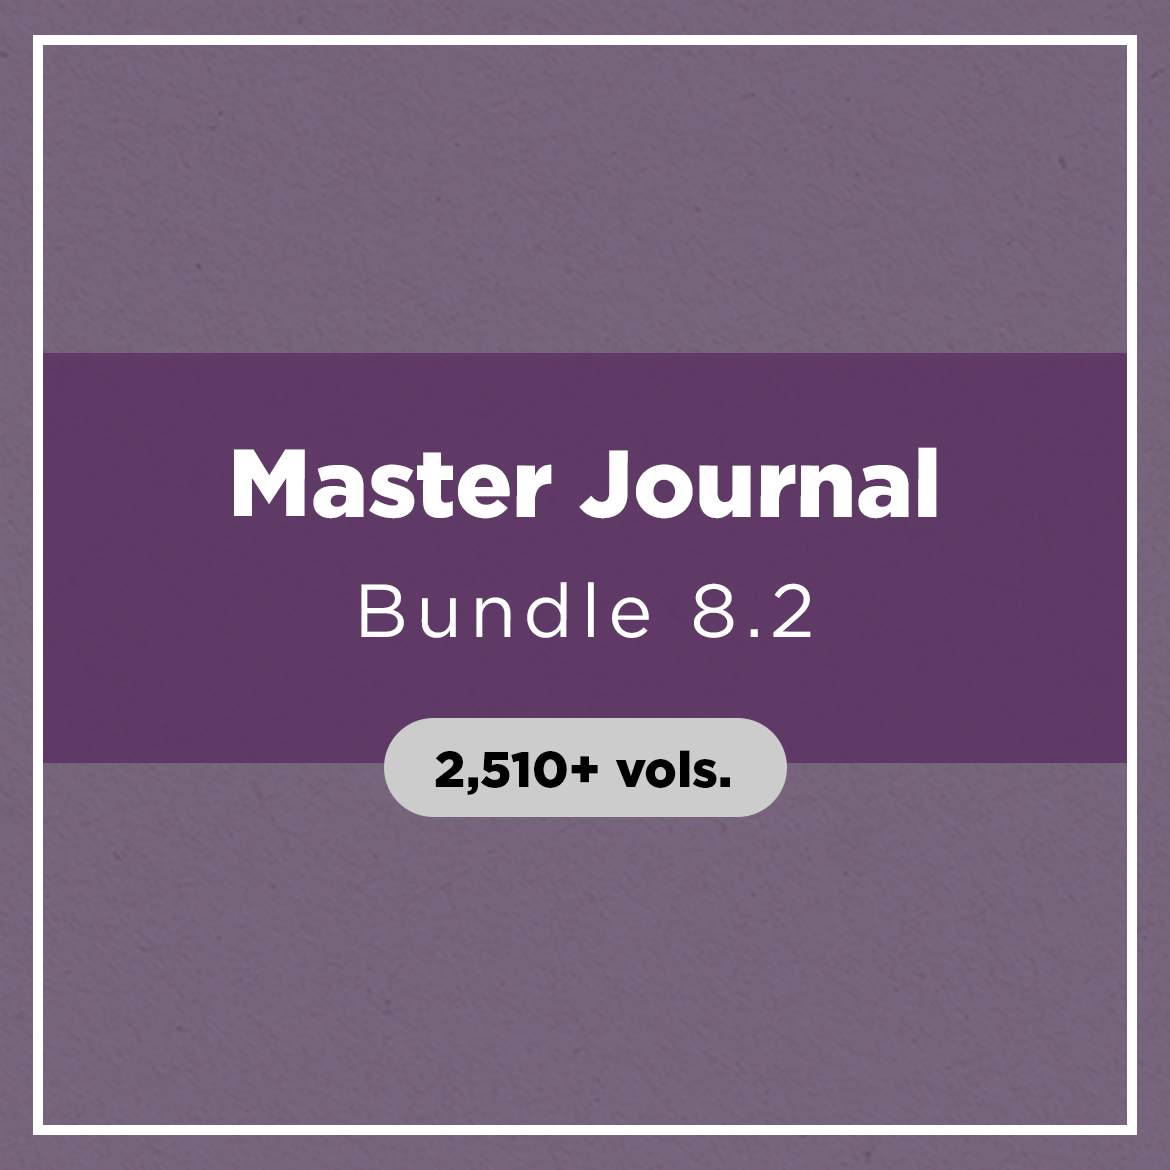 Master Journal Bundle 8.2 (2,510+ vols.)